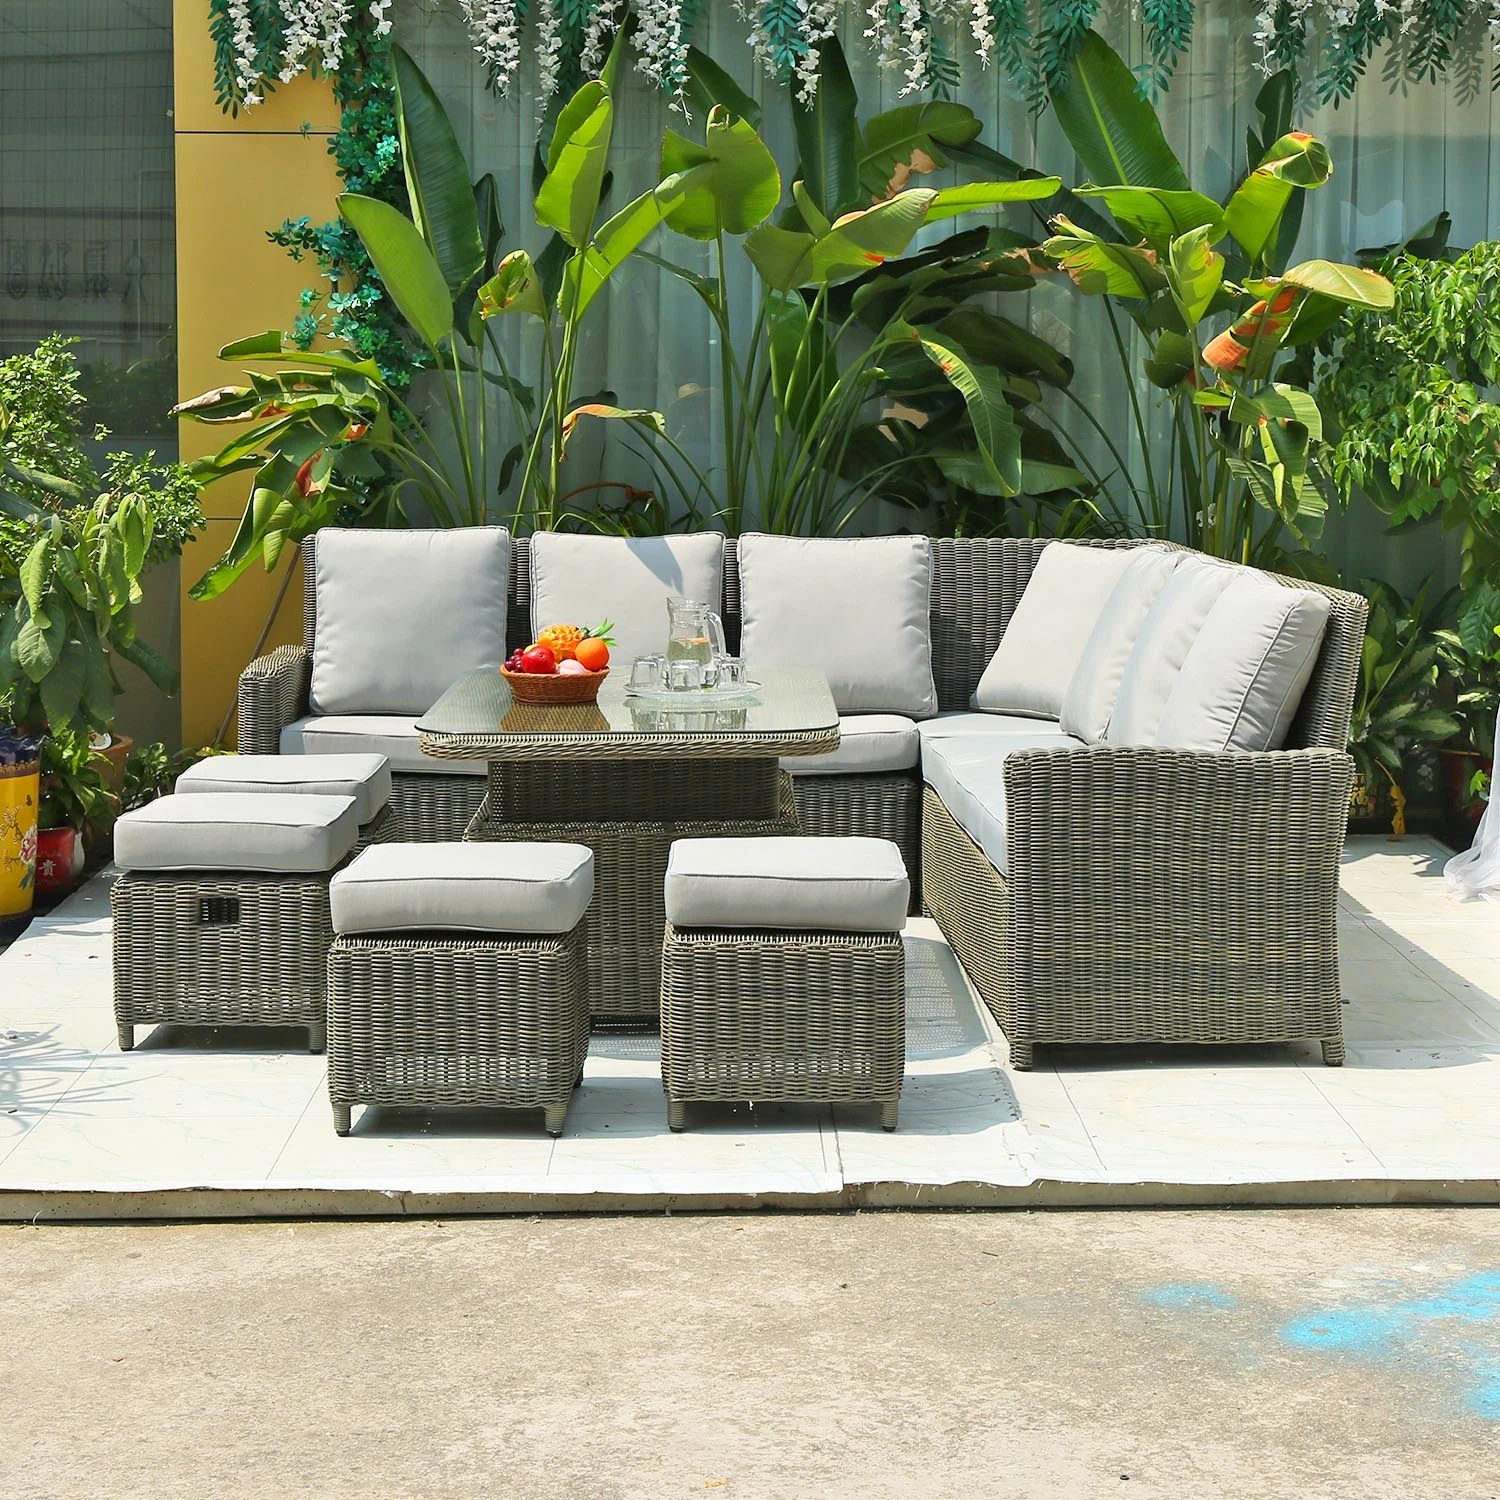 Современные плетеной/плетеной мебели диван установлен нестандартный садом открытый дворик мебель